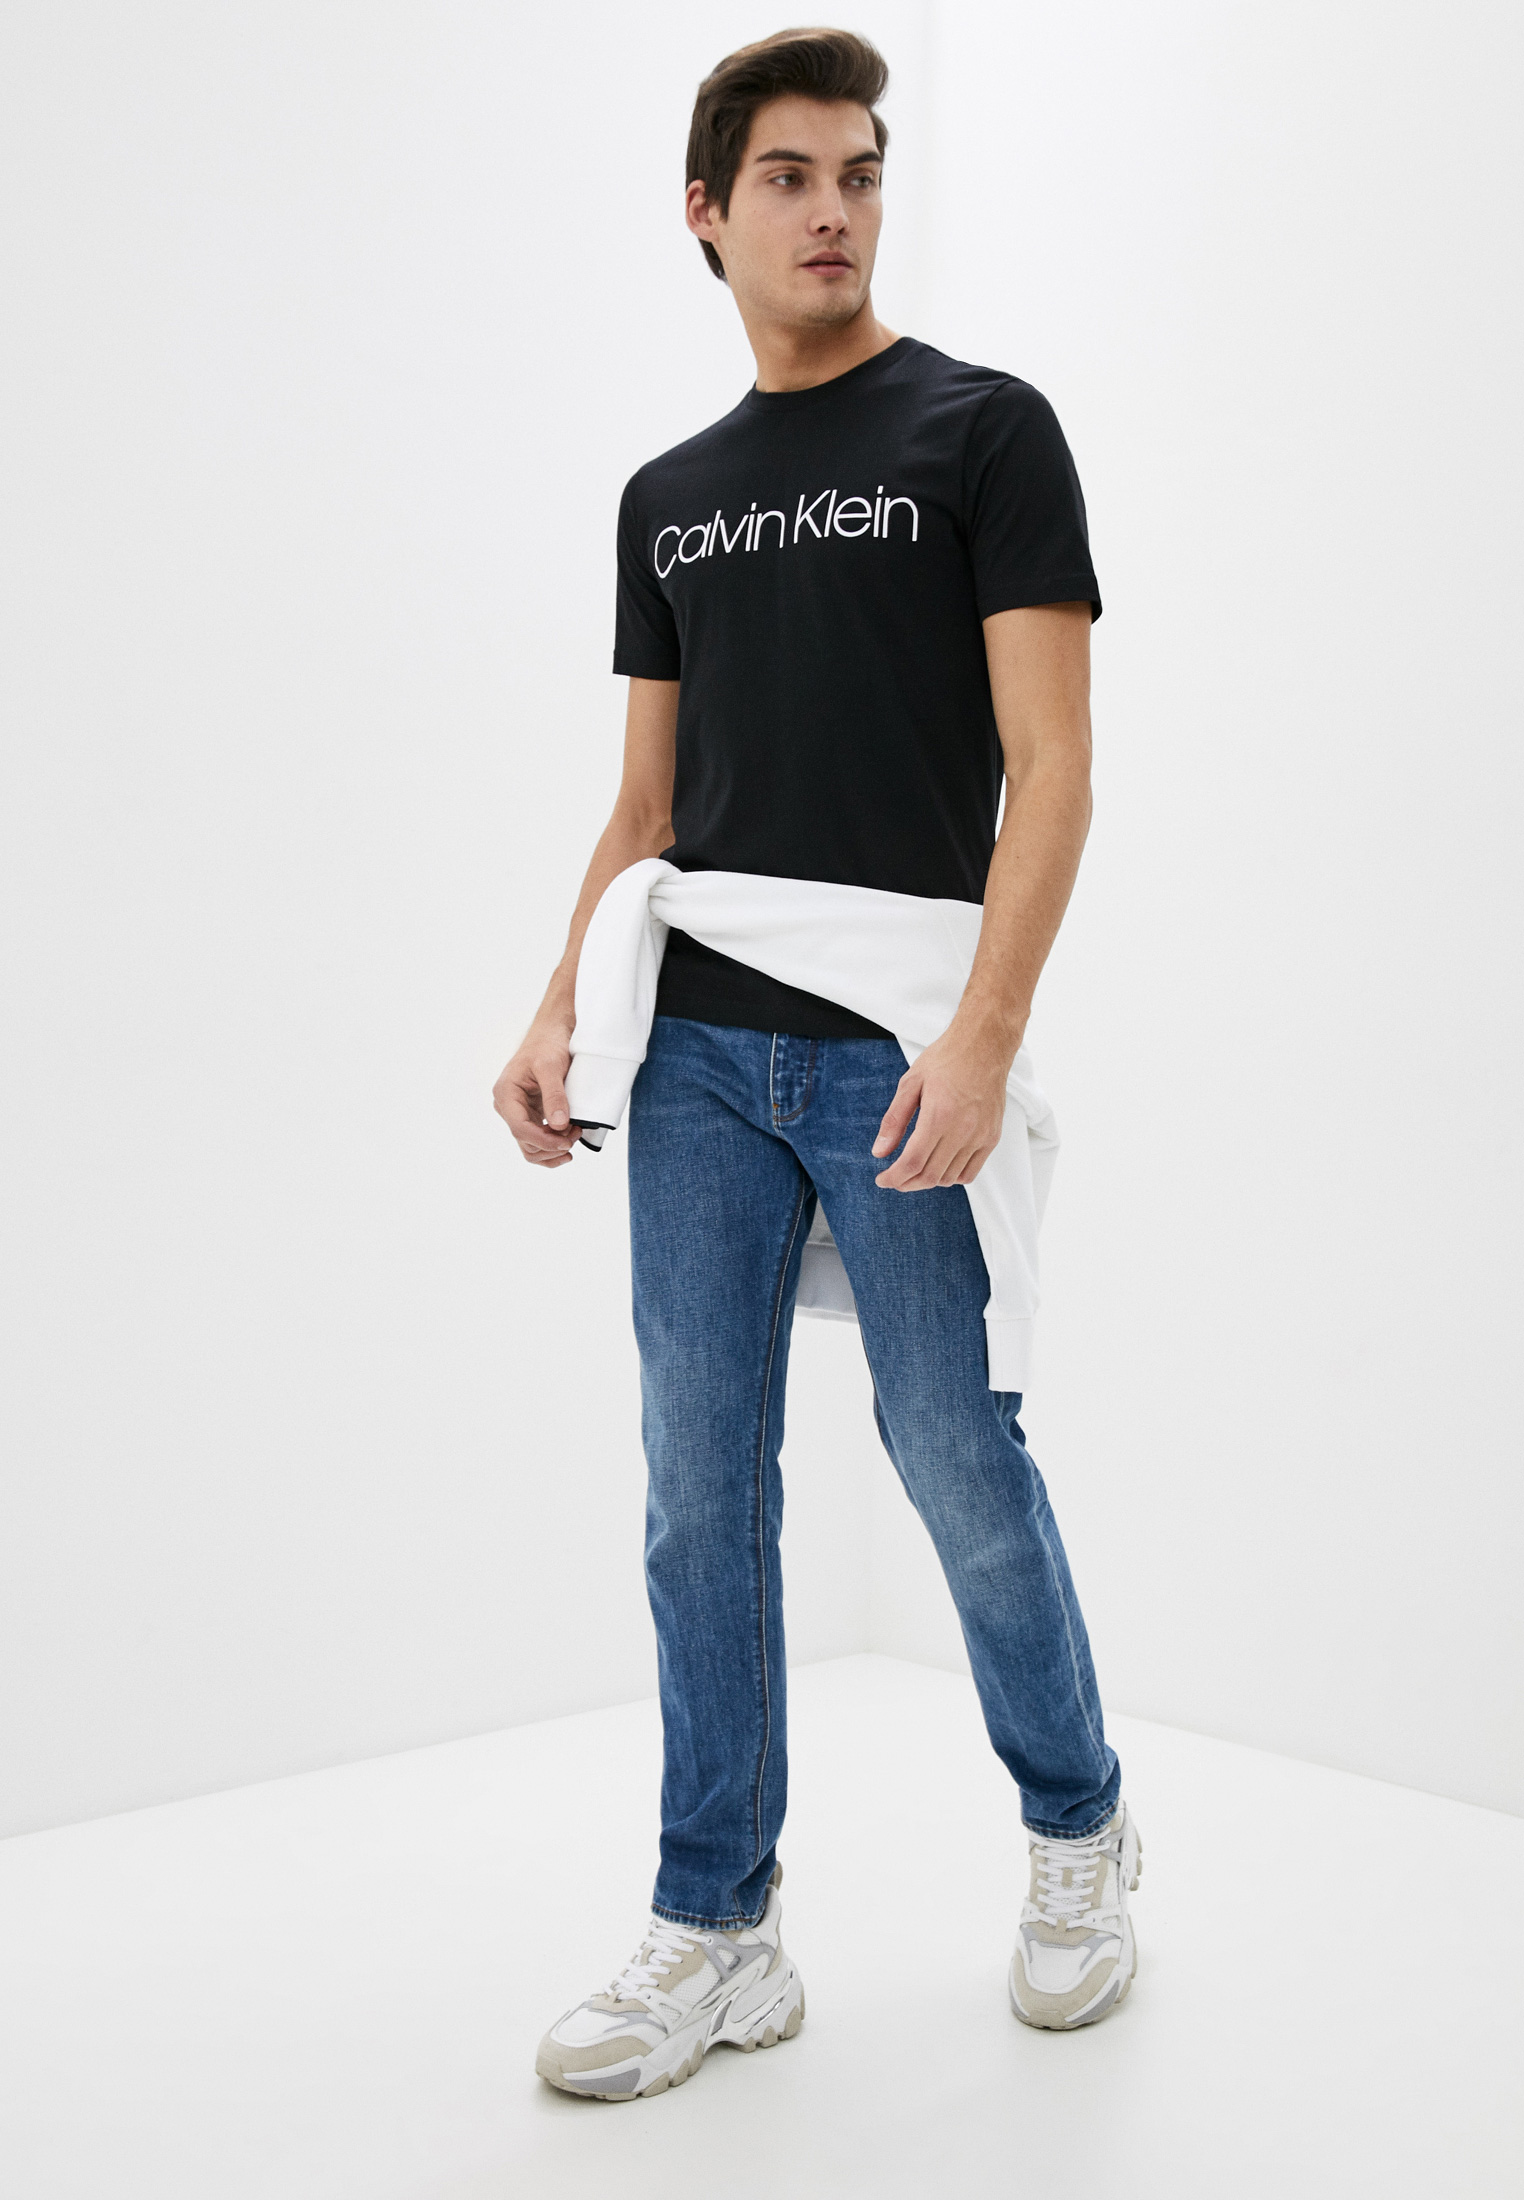 Мужская футболка Calvin Klein (Кельвин Кляйн) k10k104063: изображение 2